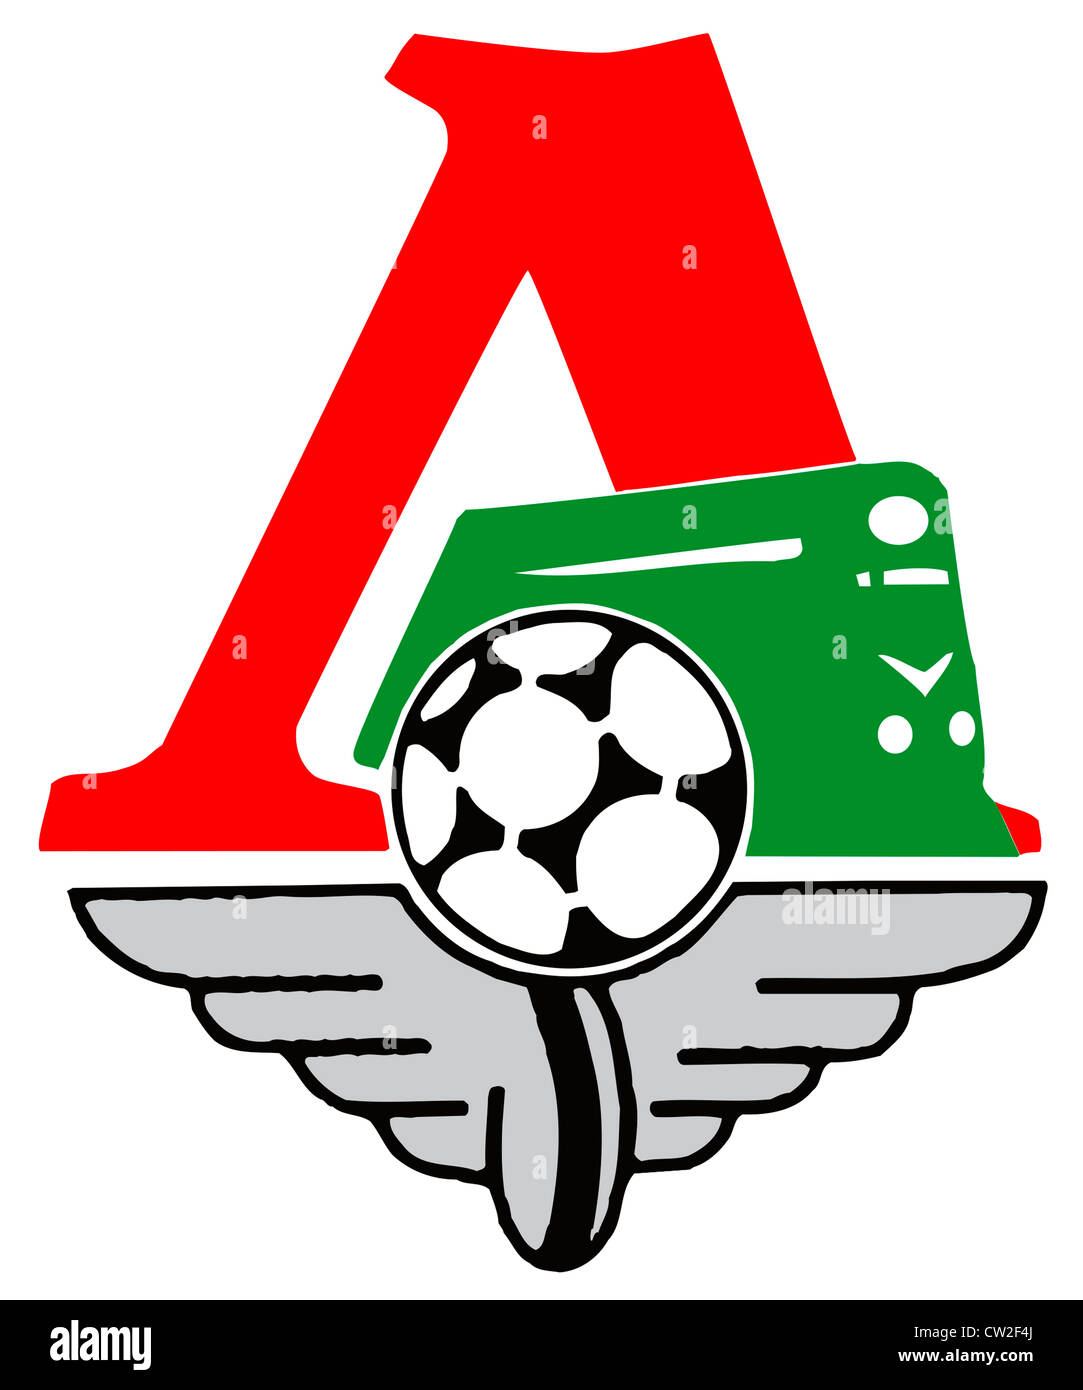 Il logo della Federazione football club Lokomotiv Mosca. Foto Stock